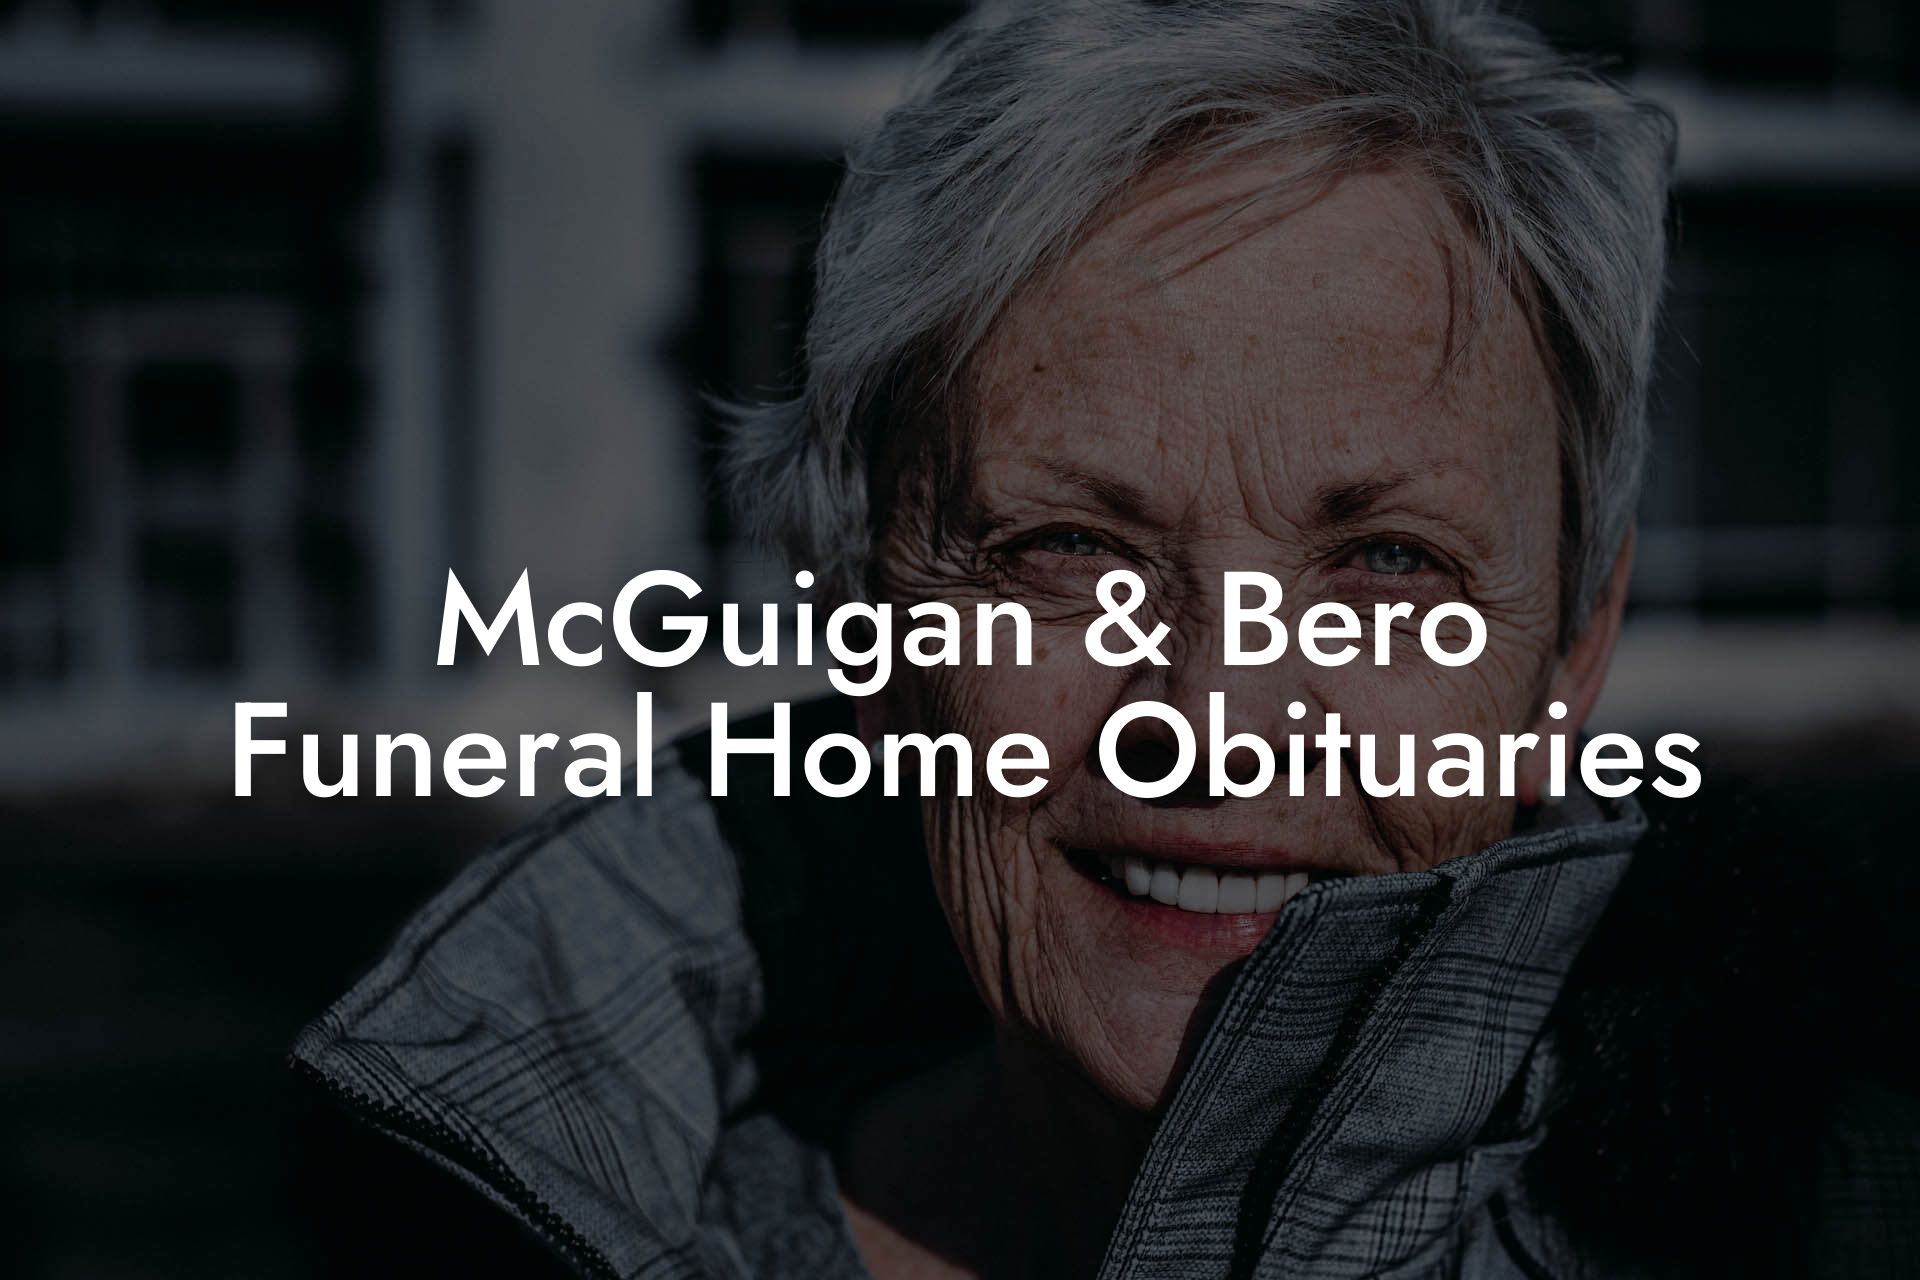 McGuigan & Bero Funeral Home Obituaries